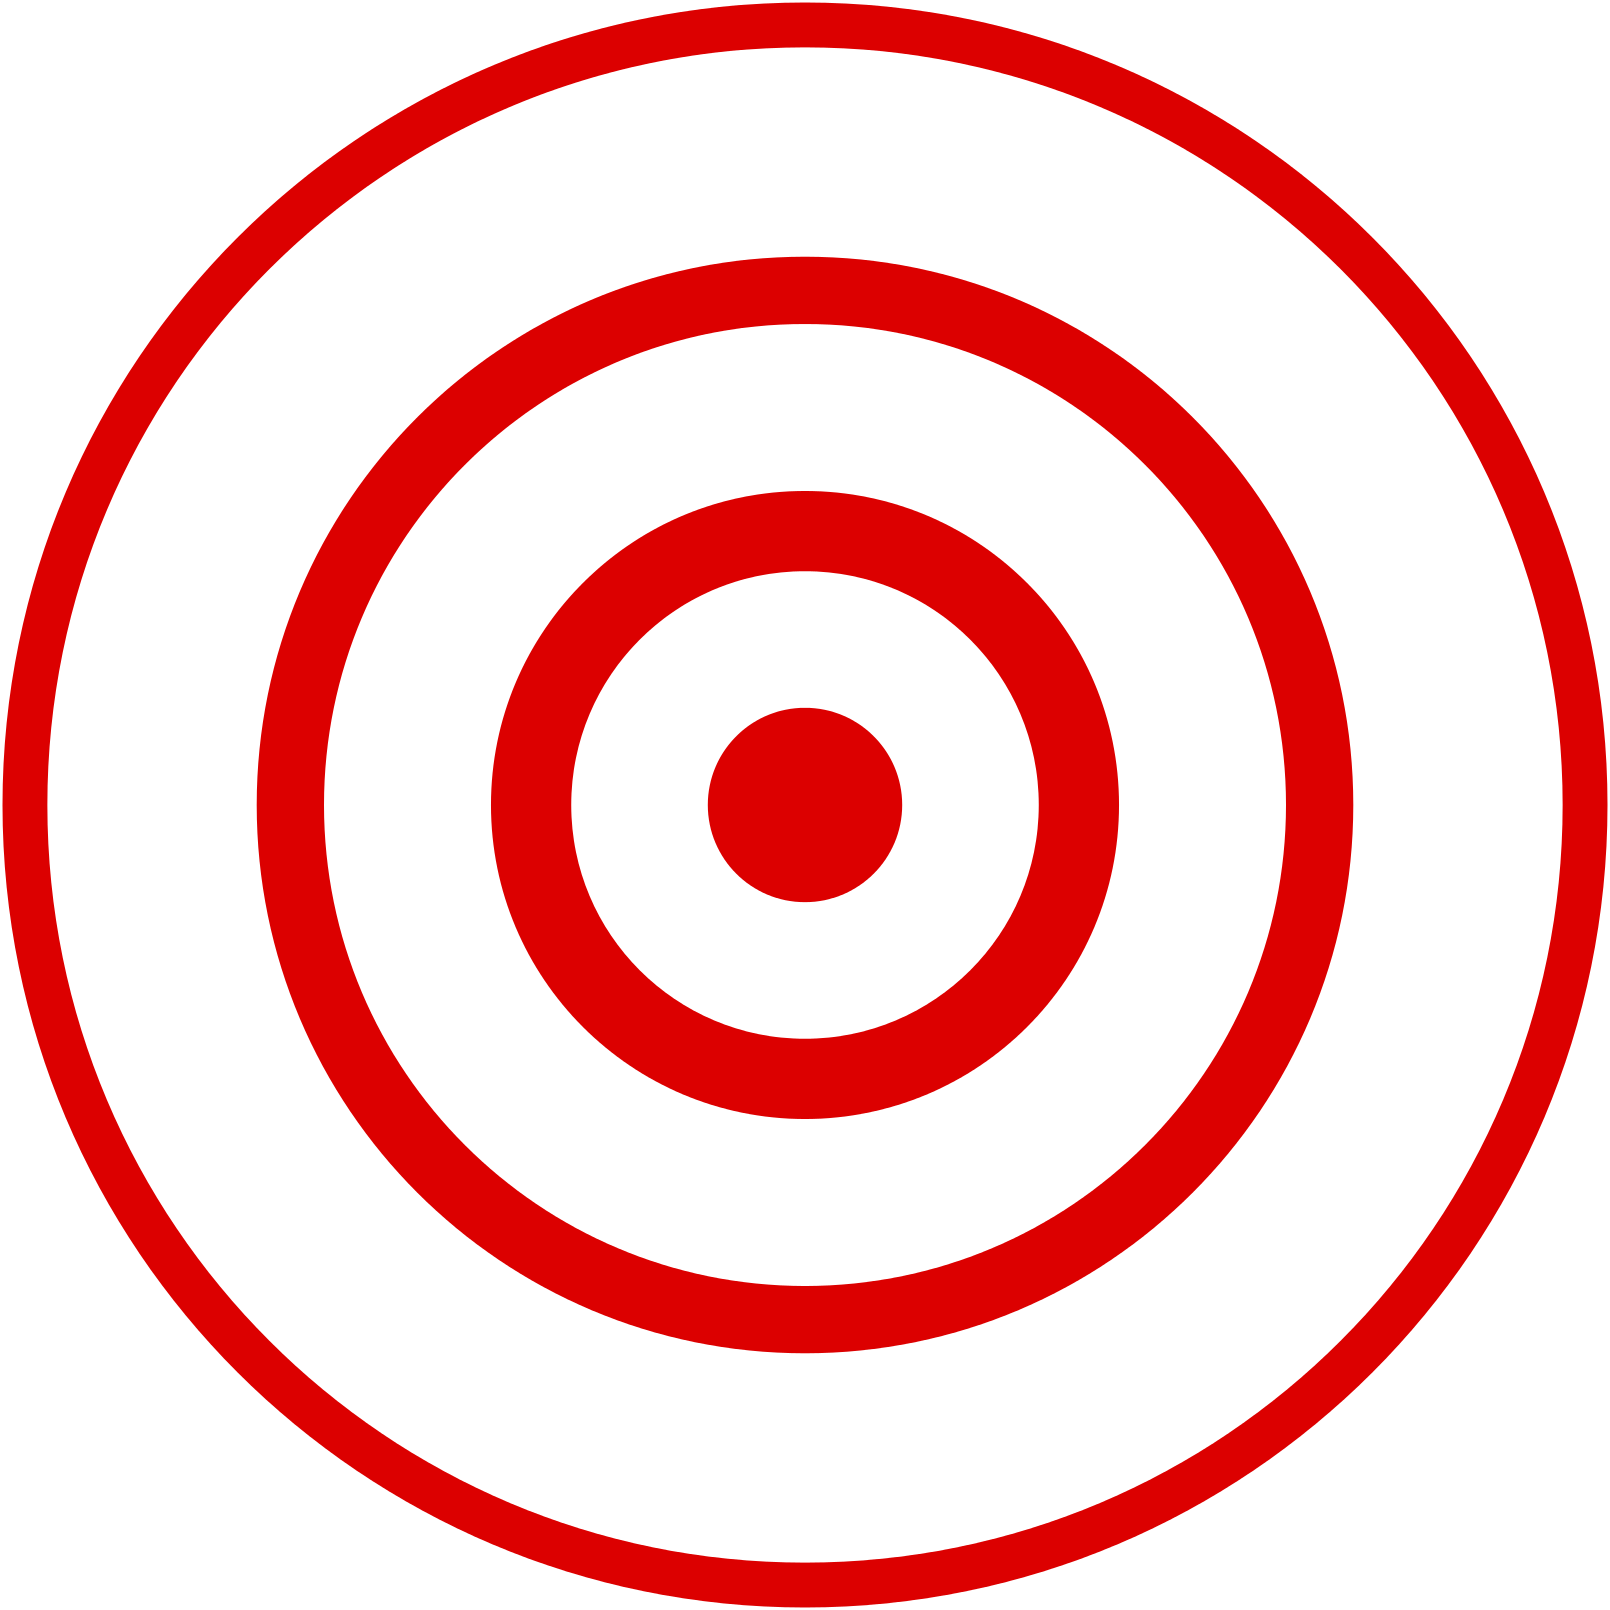 bullseye-shooting-target-clip-art-eye-png-download-1610-1610-free